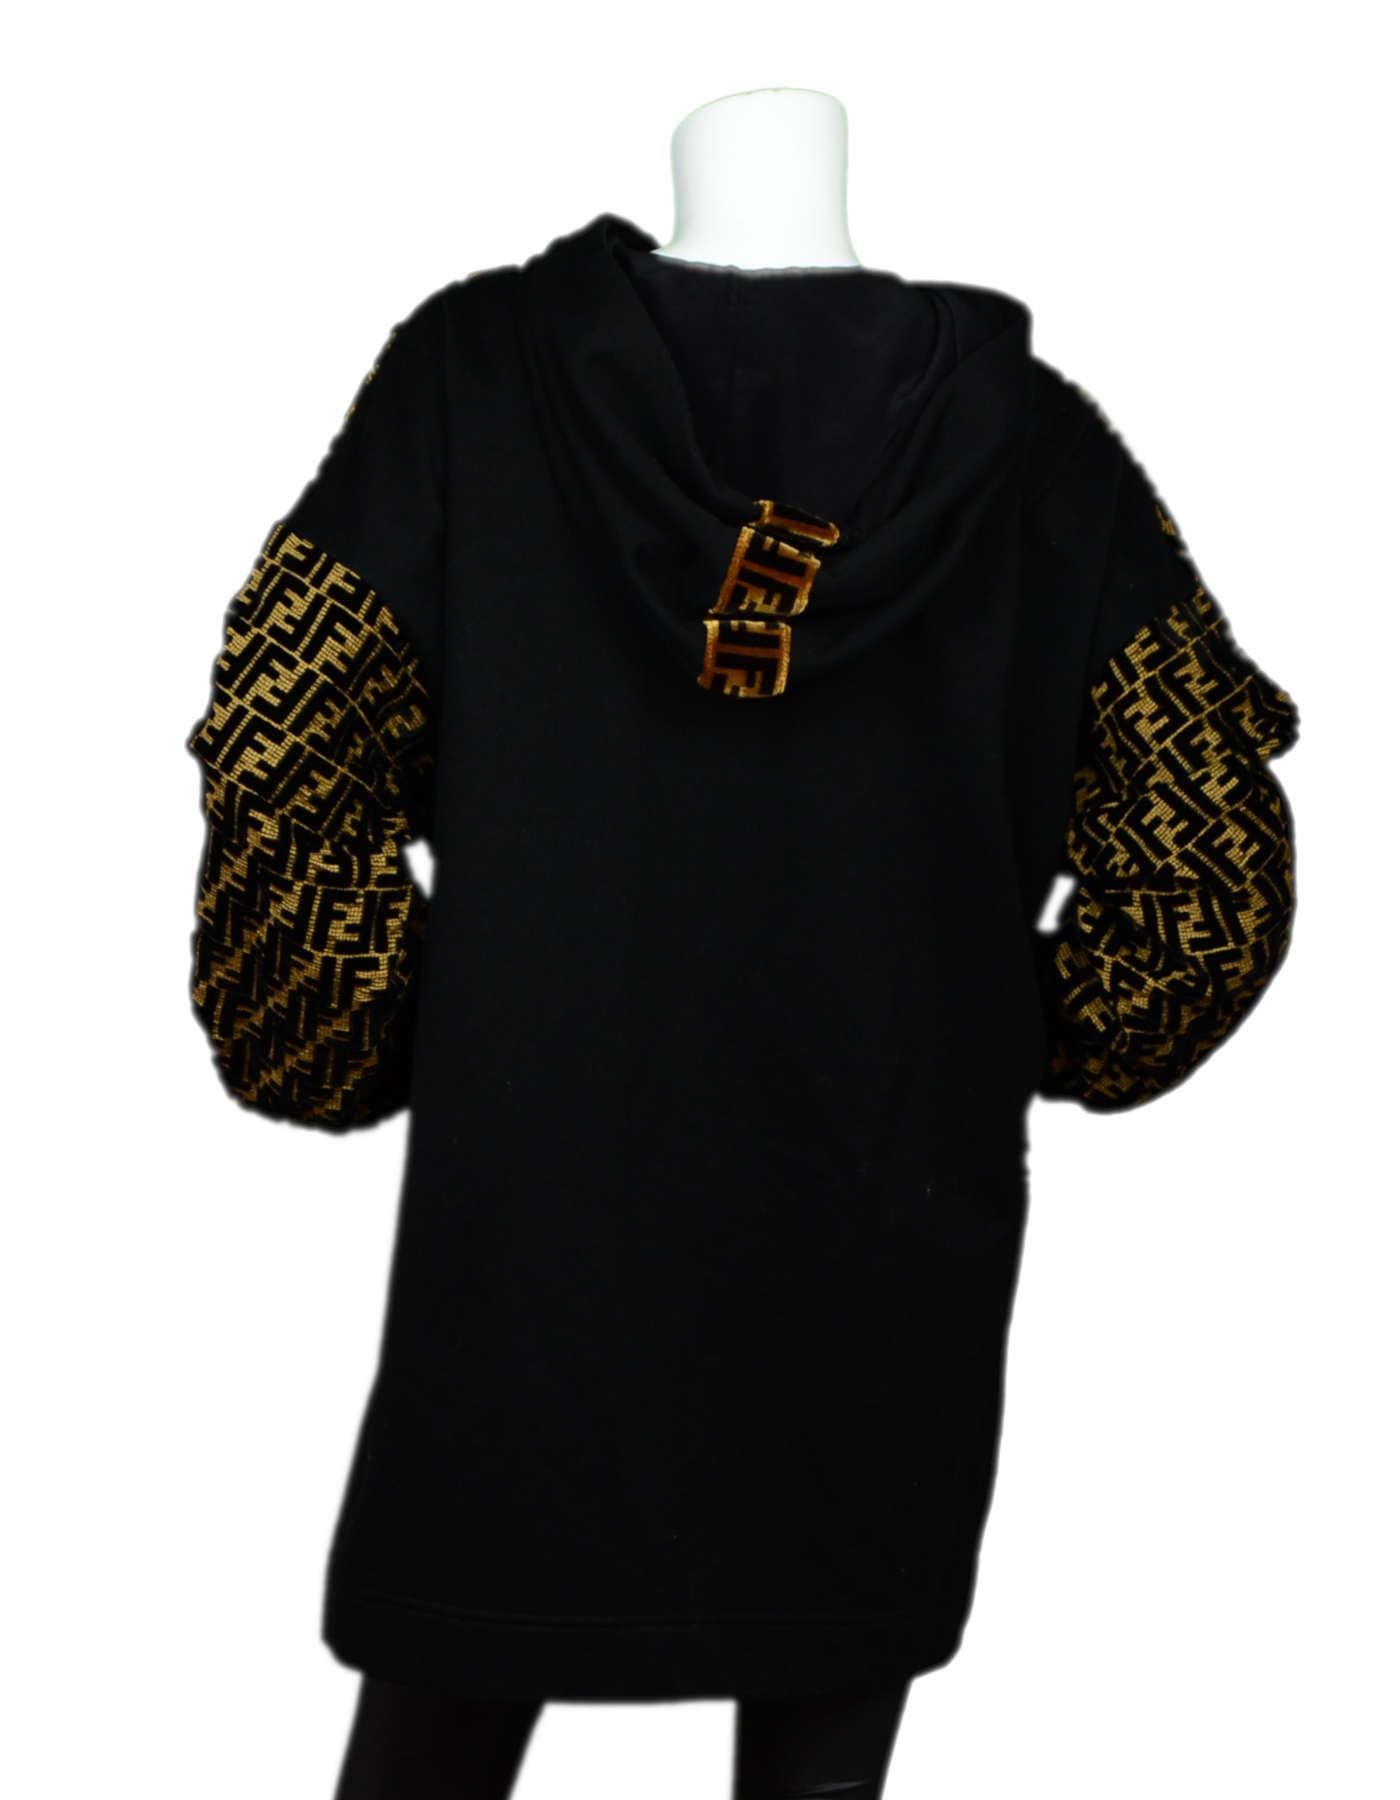 Black Fendi '18 SOLD OUT Velvet Logo Monogrammed Hooded Top Sweatshirt Sz 48 rt $2, 590